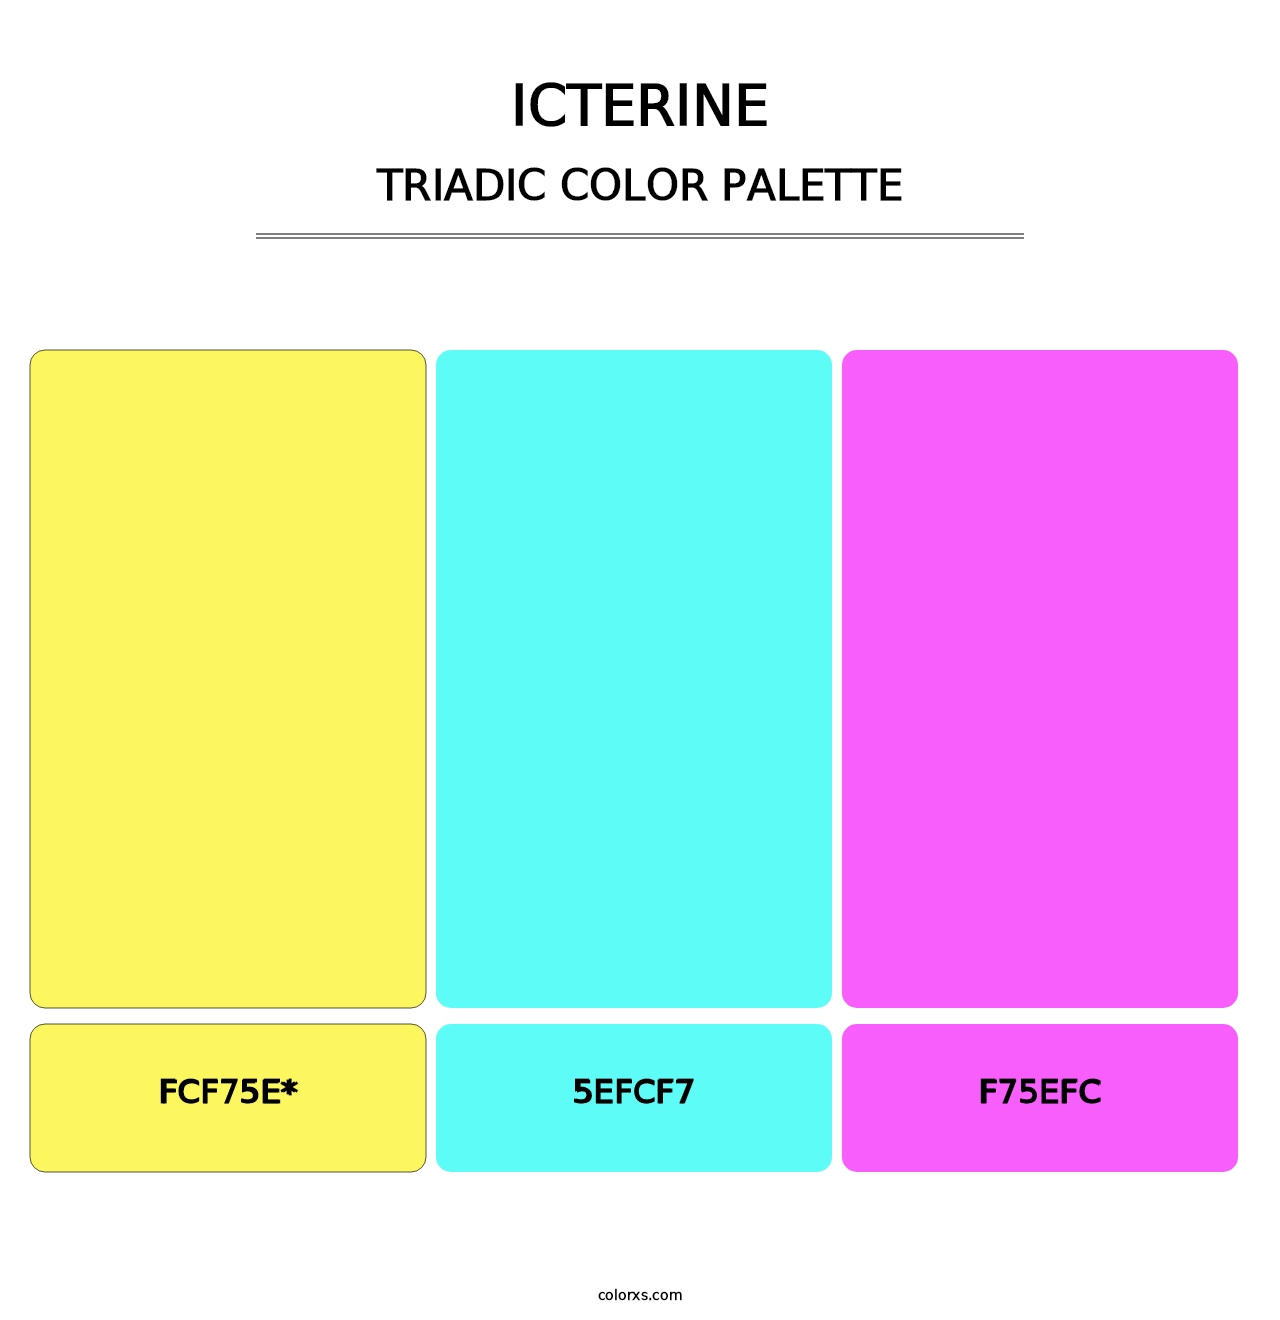 Icterine - Triadic Color Palette